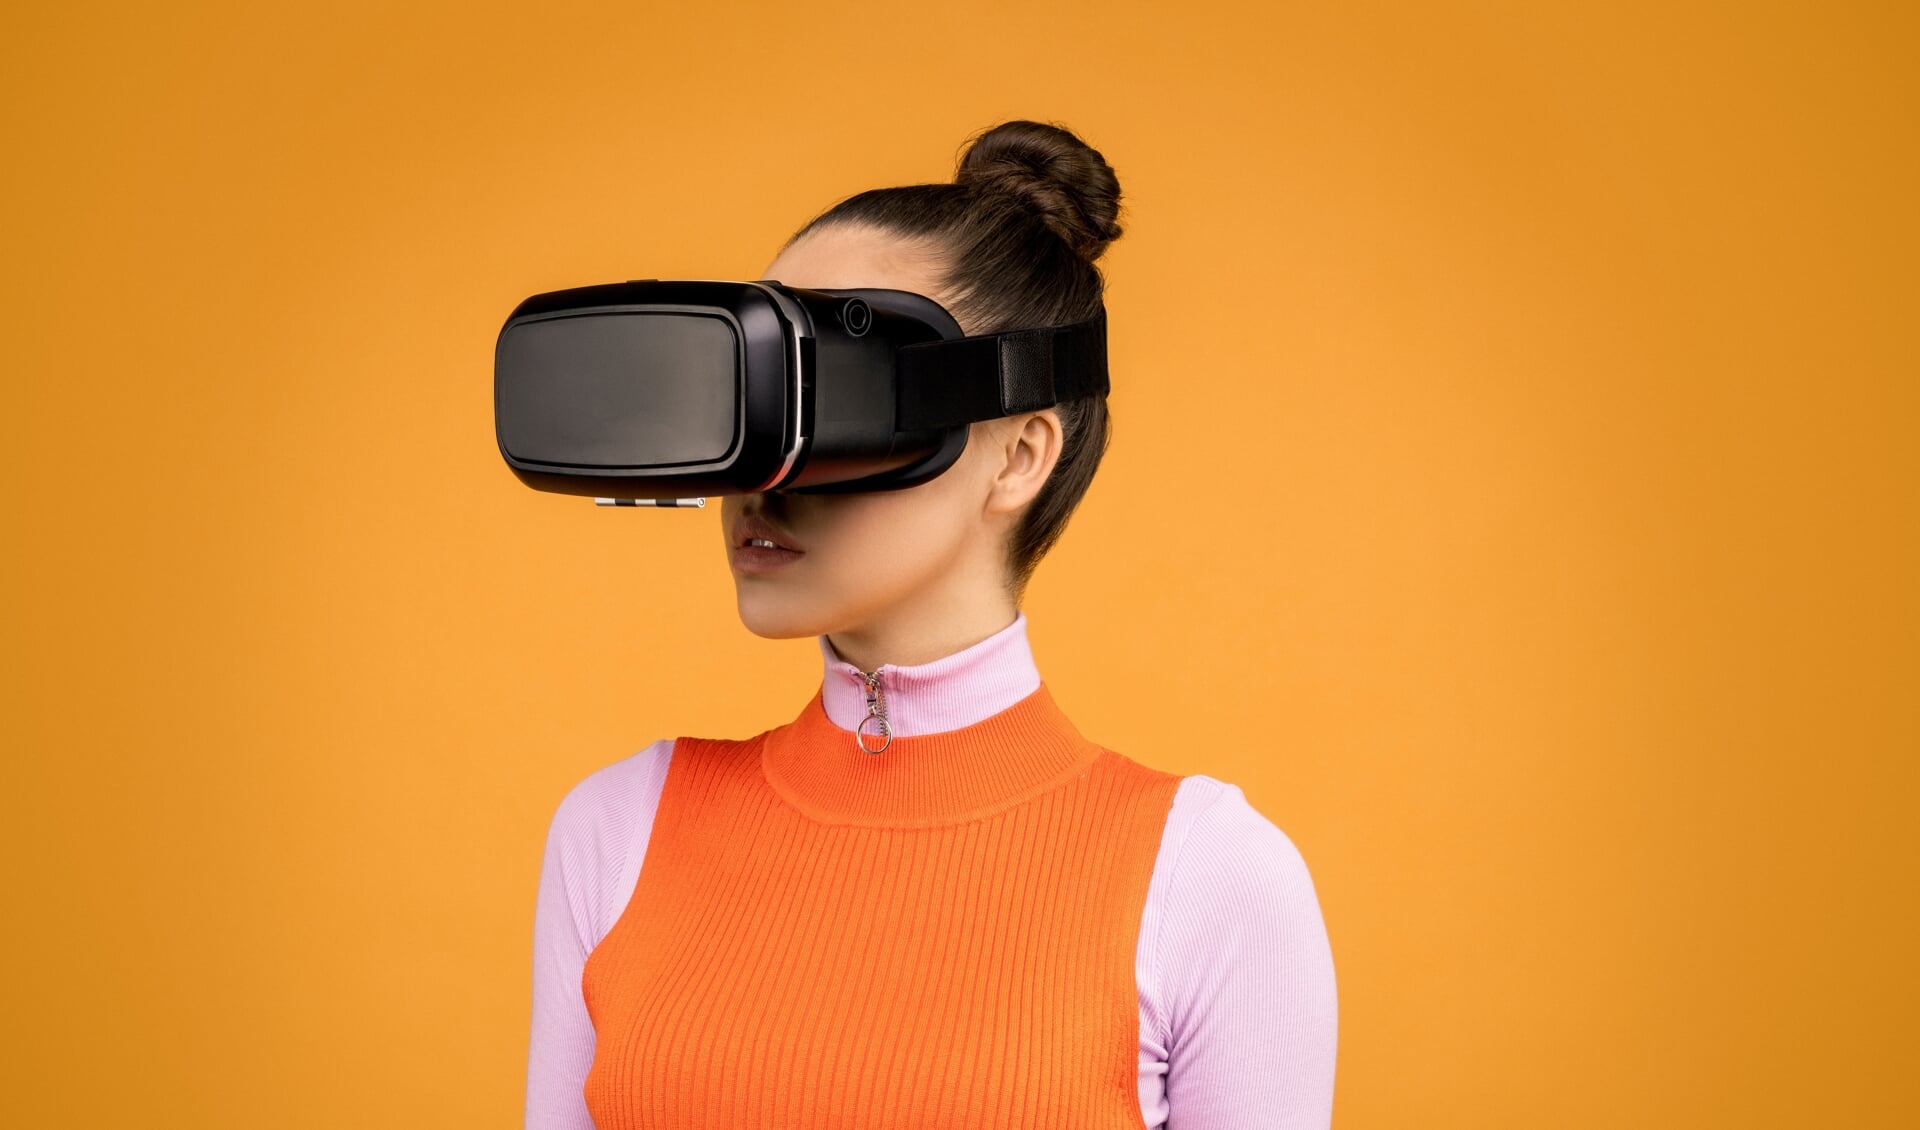 Uit het onderzoek blijkt dat met VR-brillen verbluffende resultaten kunnen worden bereikt.